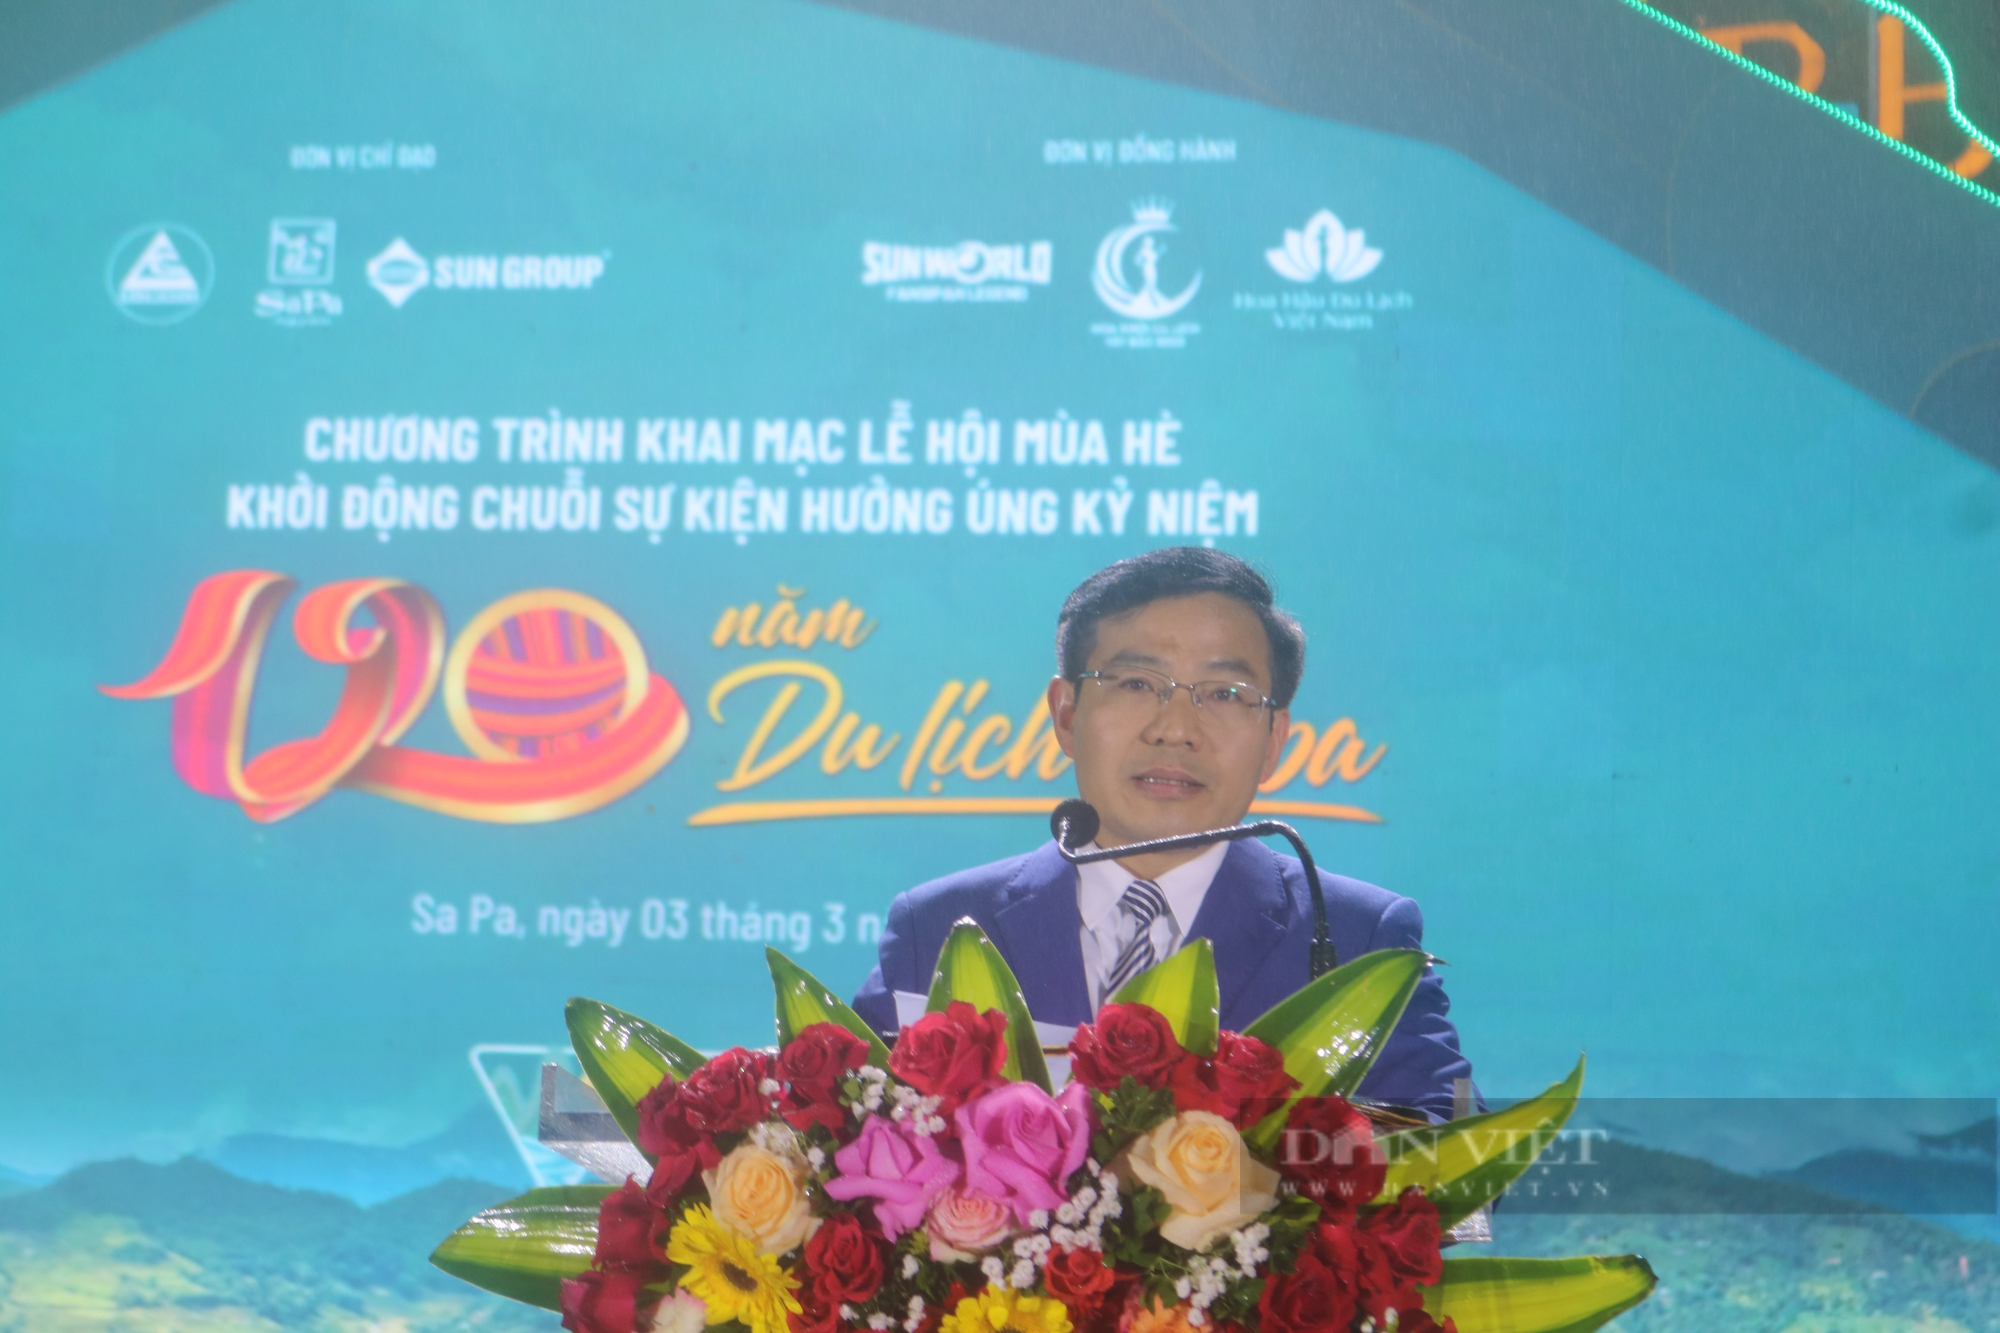 Ông Đỗ Văn Tân, Phó Chủ tịch UBND thị xã Sa Pa phát biểu khai mạc Lễ hội mùa hè và khởi động chuỗi sự kiện hưởng ứng kỷ niệm 120 năm du lịch Sa Pa.